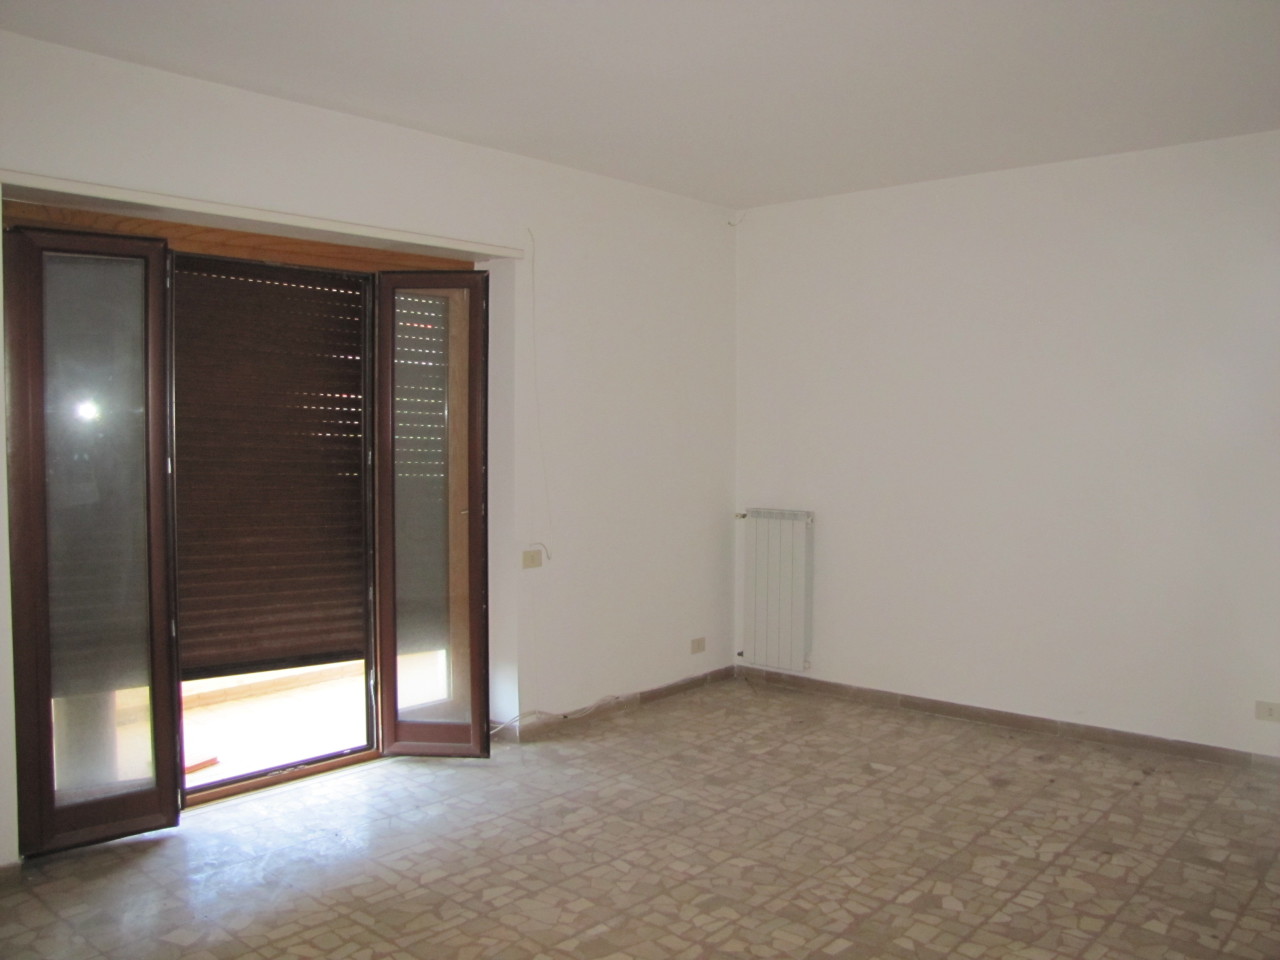 Appartamento in vendita a San Felice Circeo, 8 locali, prezzo € 200.000 | PortaleAgenzieImmobiliari.it